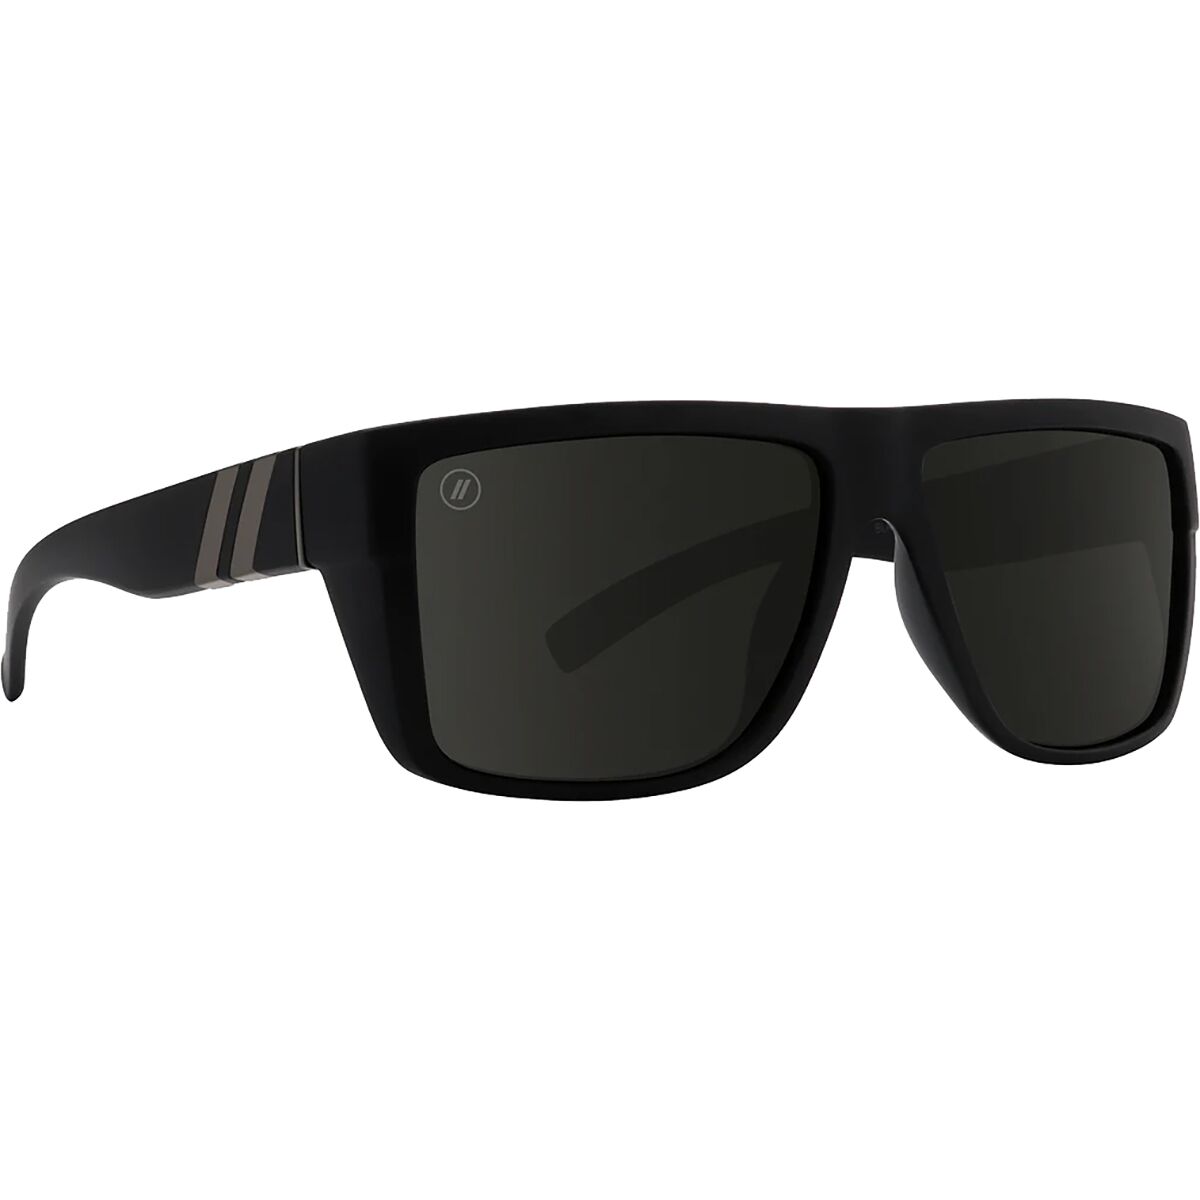 Blenders Dark Flatter Polarized Sunglasses